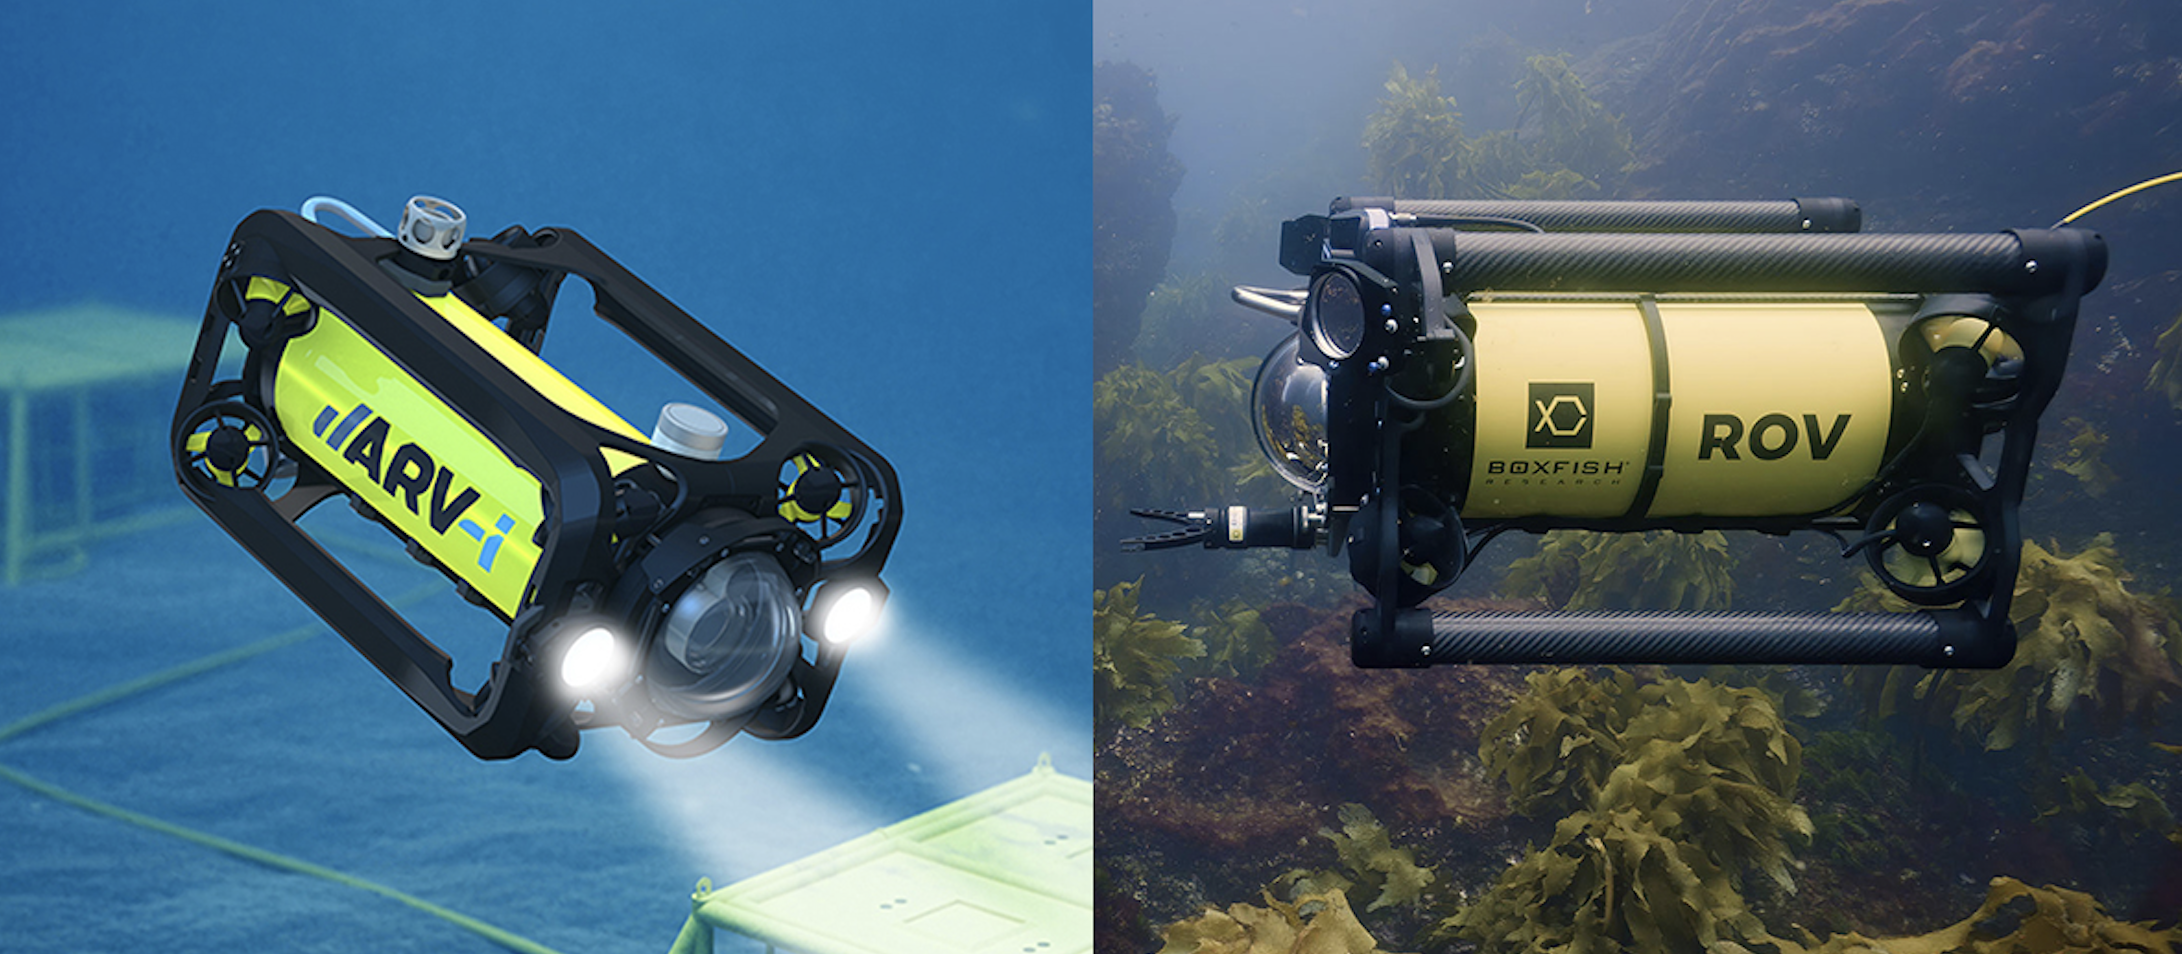 2 Boxfish AUV and ROV